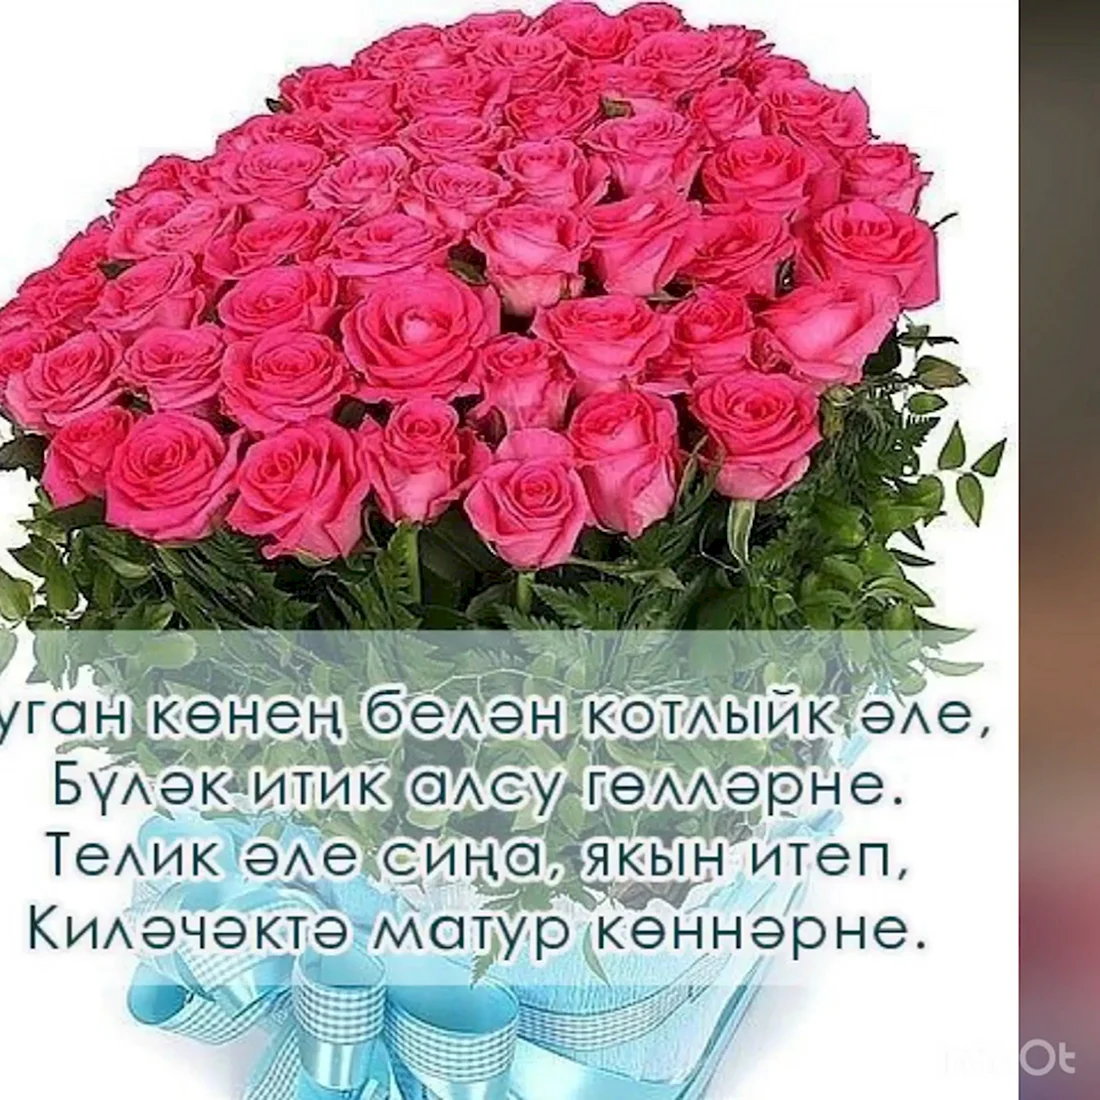 Татарские поздравления с днем рождения